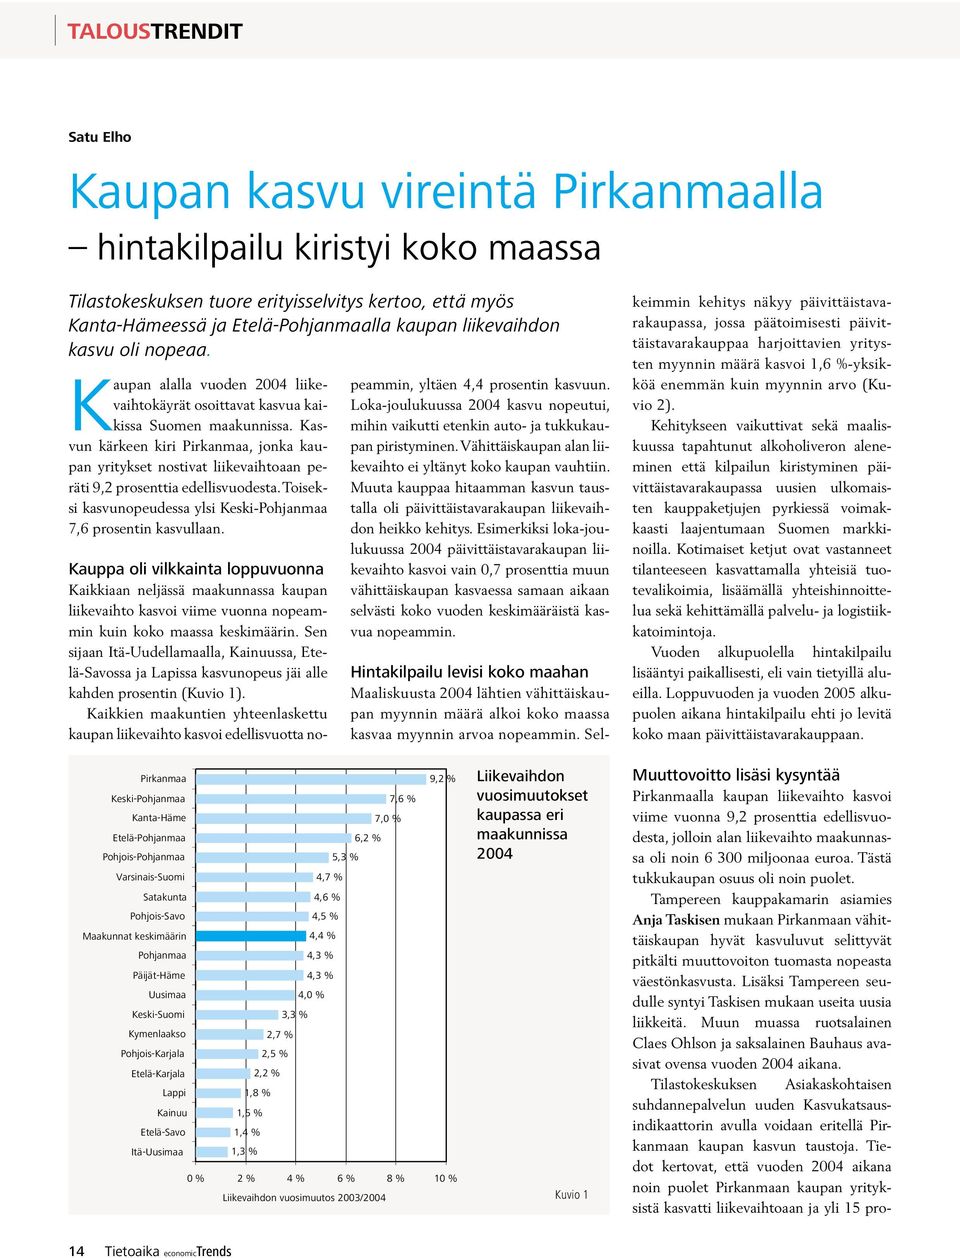 Kasvun kärkeen kiri Pirkanmaa, jonka kaupan yritykset nostivat liikevaihtoaan peräti 9,2 prosenttia edellisvuodesta. Toiseksi kasvunopeudessa ylsi Keski-Pohjanmaa 7,6 prosentin kasvullaan.